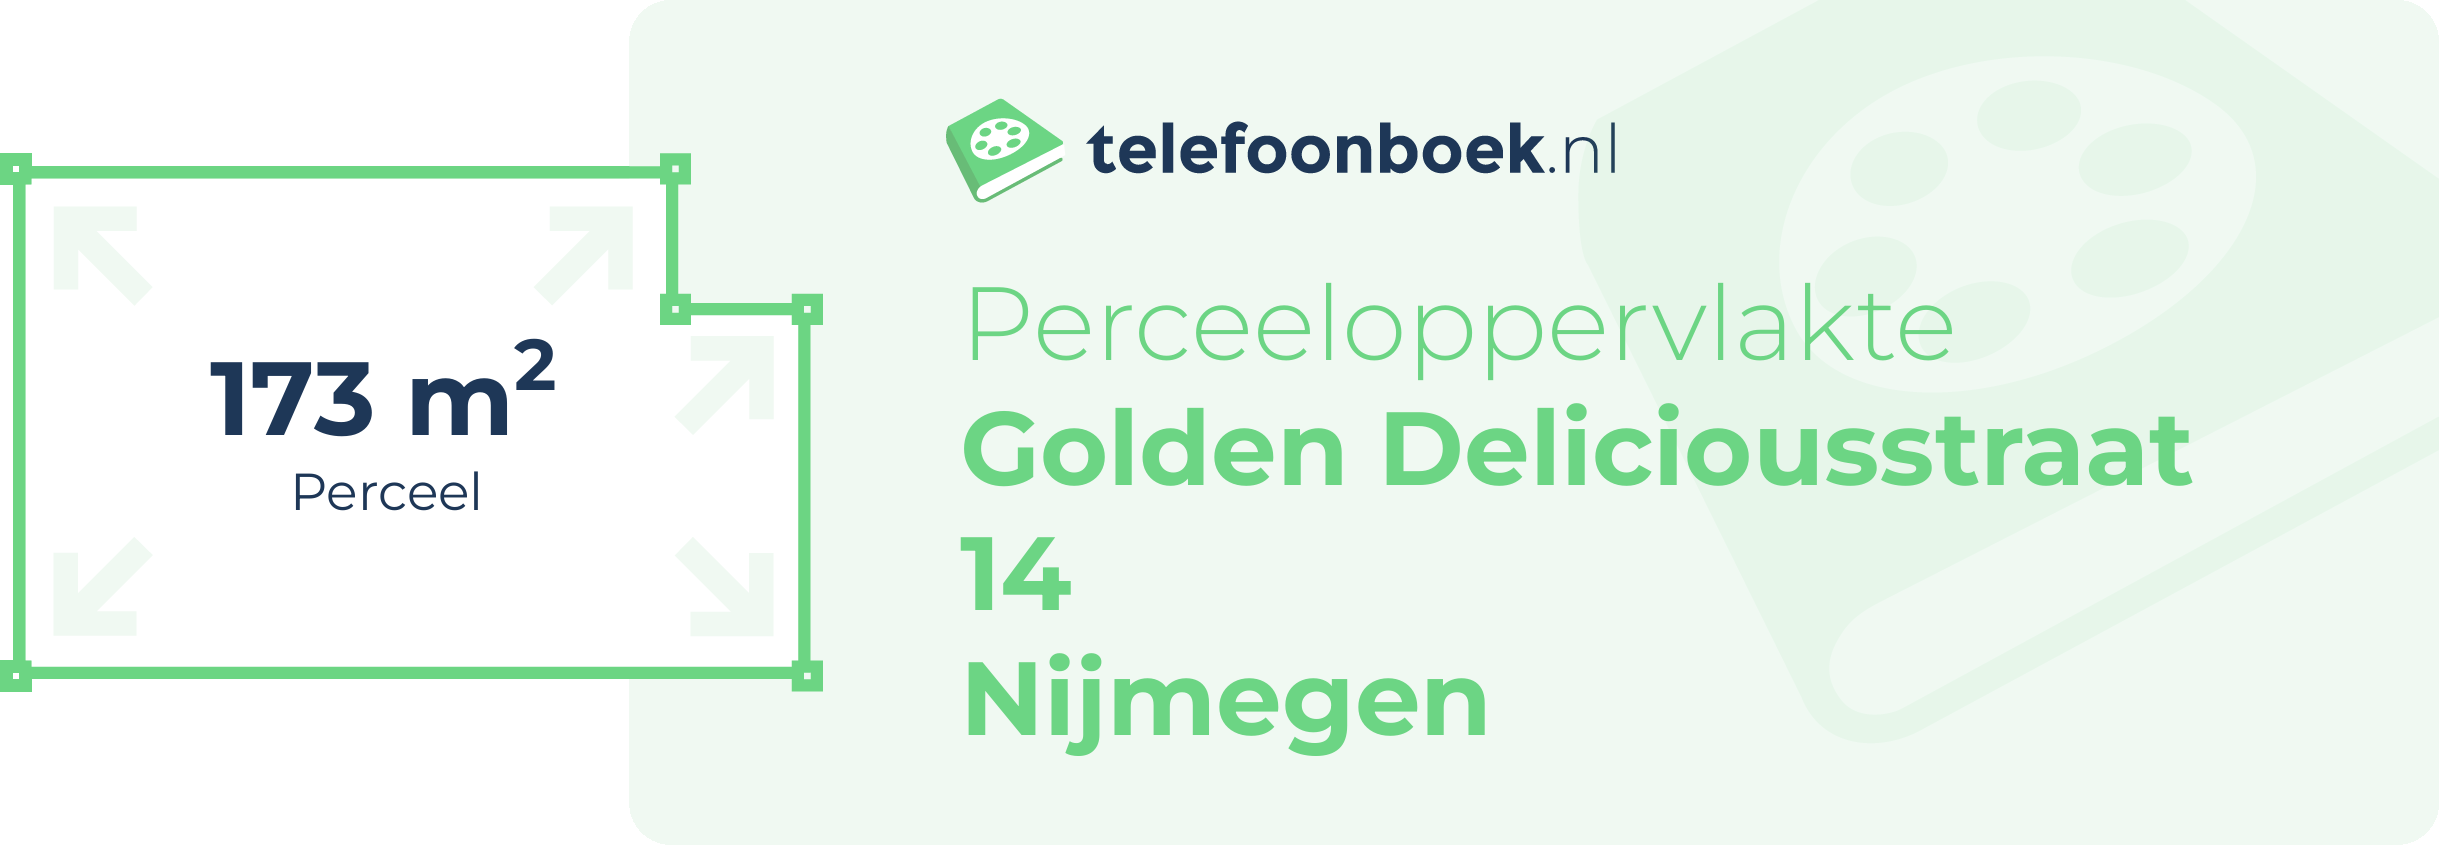 Perceeloppervlakte Golden Deliciousstraat 14 Nijmegen